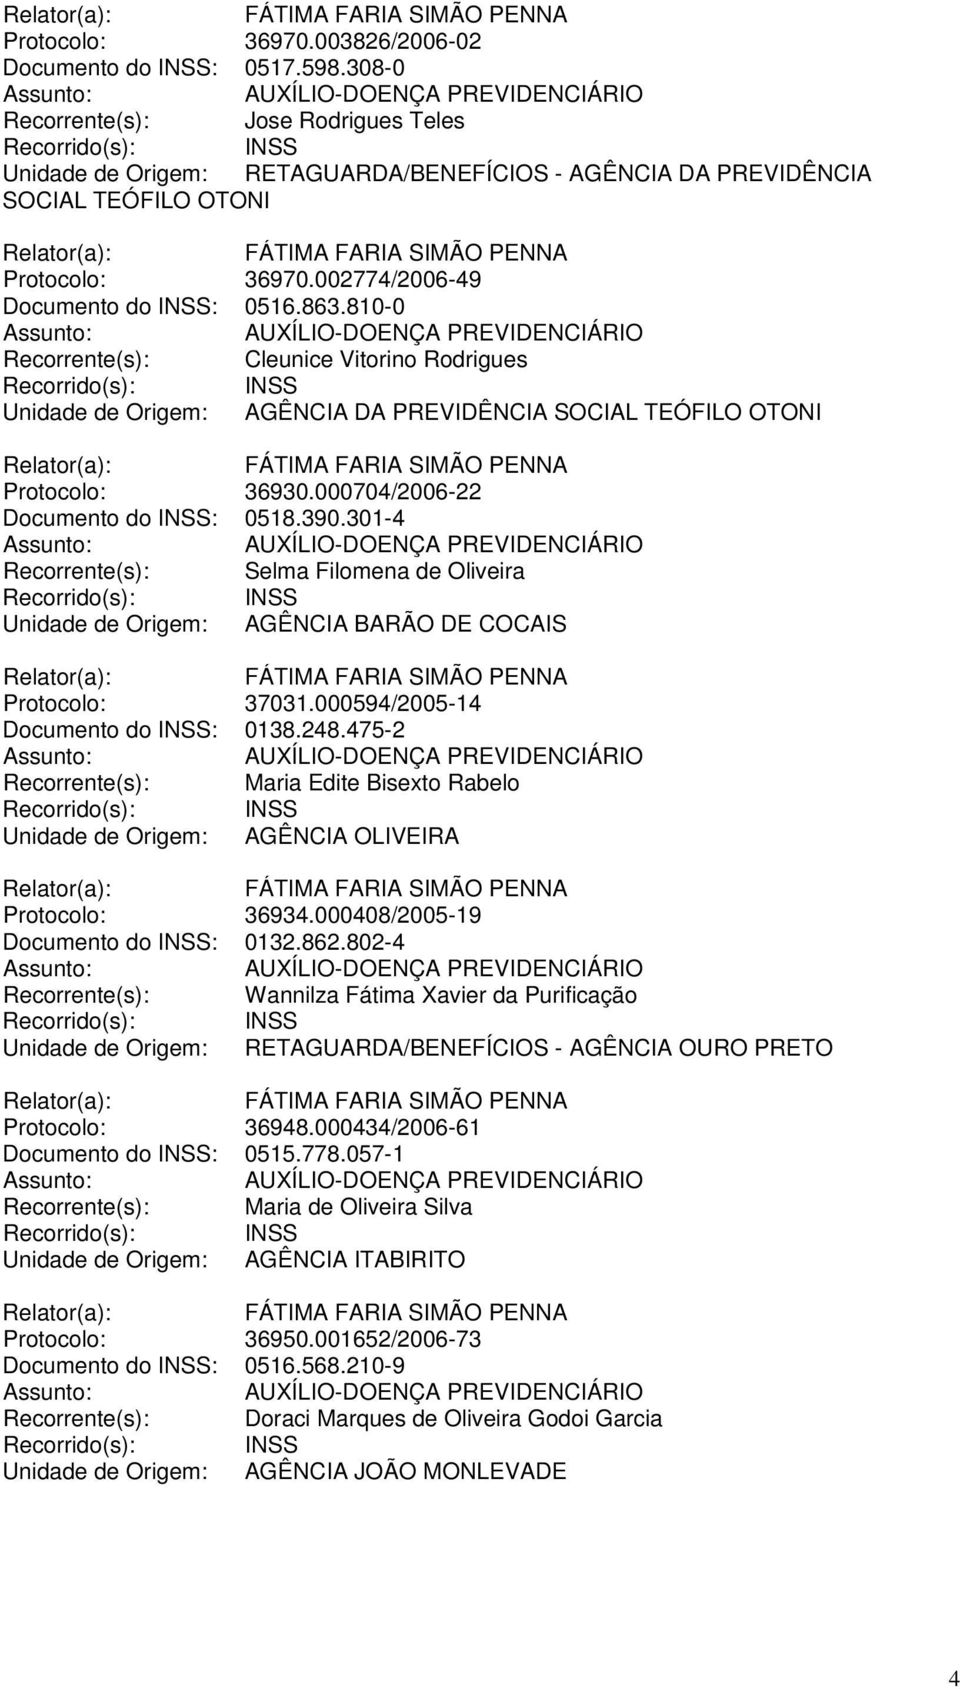 810-0 Recorrente(s): Cleunice Vitorino Rodrigues Unidade de Origem: AGÊNCIA DA PREVIDÊNCIA SOCIAL TEÓFILO OTONI Protocolo: 36930.000704/2006-22 Documento do INSS: 0518.390.